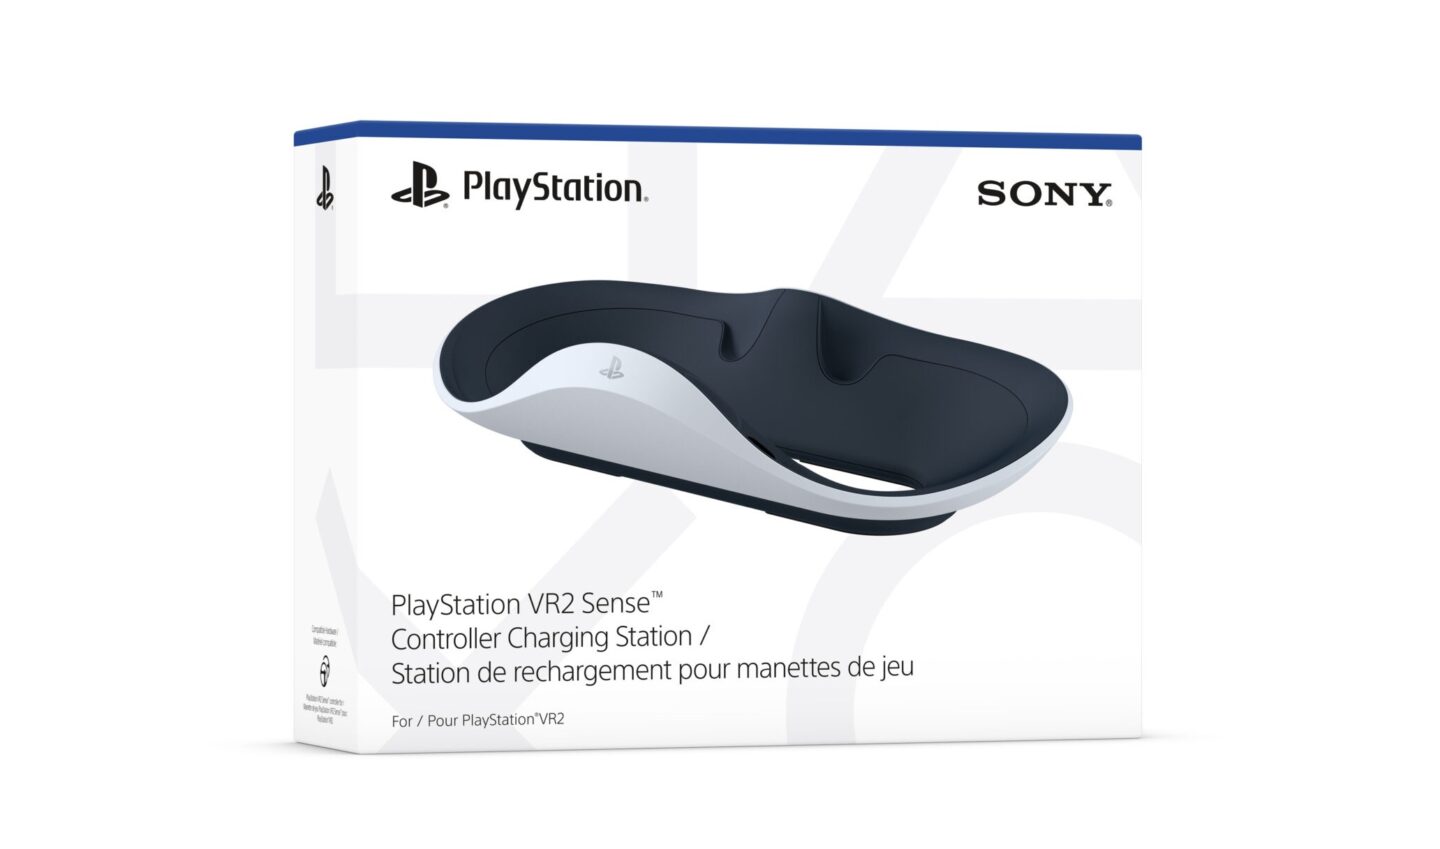 Sony розкрила подробиці щодо виходу гарнітури PlayStation VR2: дата релізу, ціна, лінійка ігор